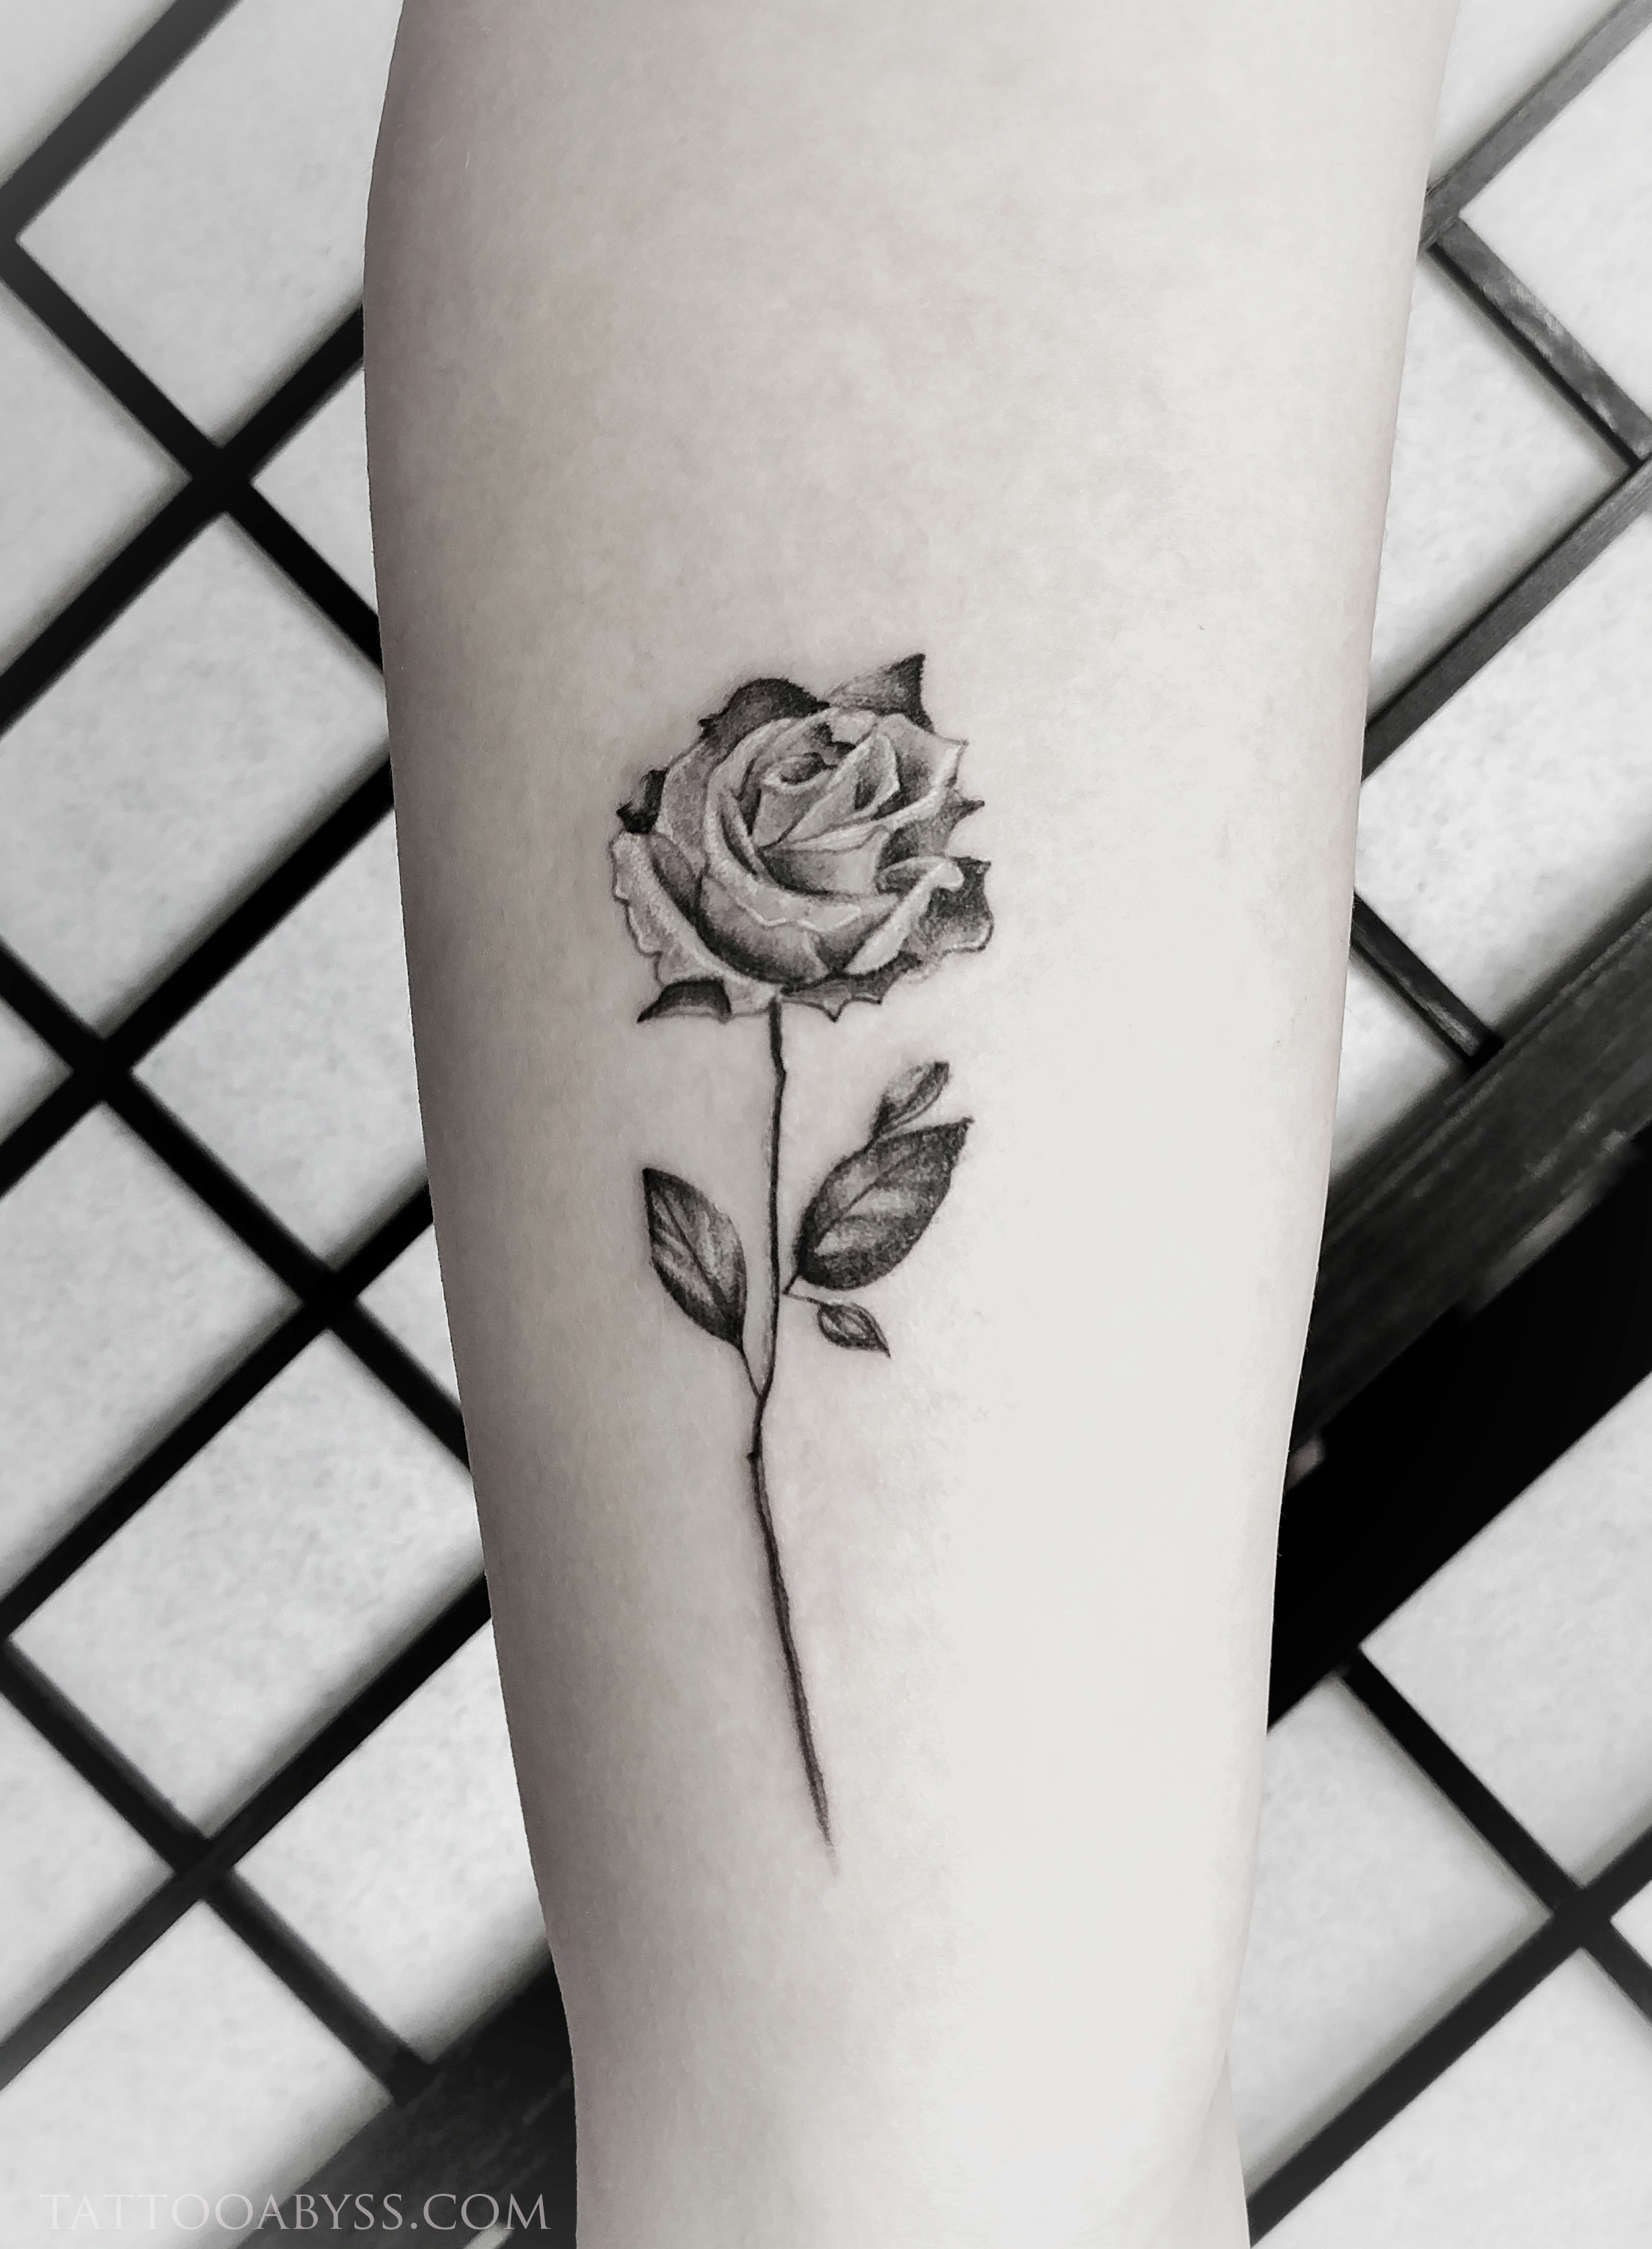 Small Rose Tattoo / Infinity tattoo / flower tattoo / floral tattoo /  wildflower tattoo / small tattoo / cute tattoo / wrist tattoo